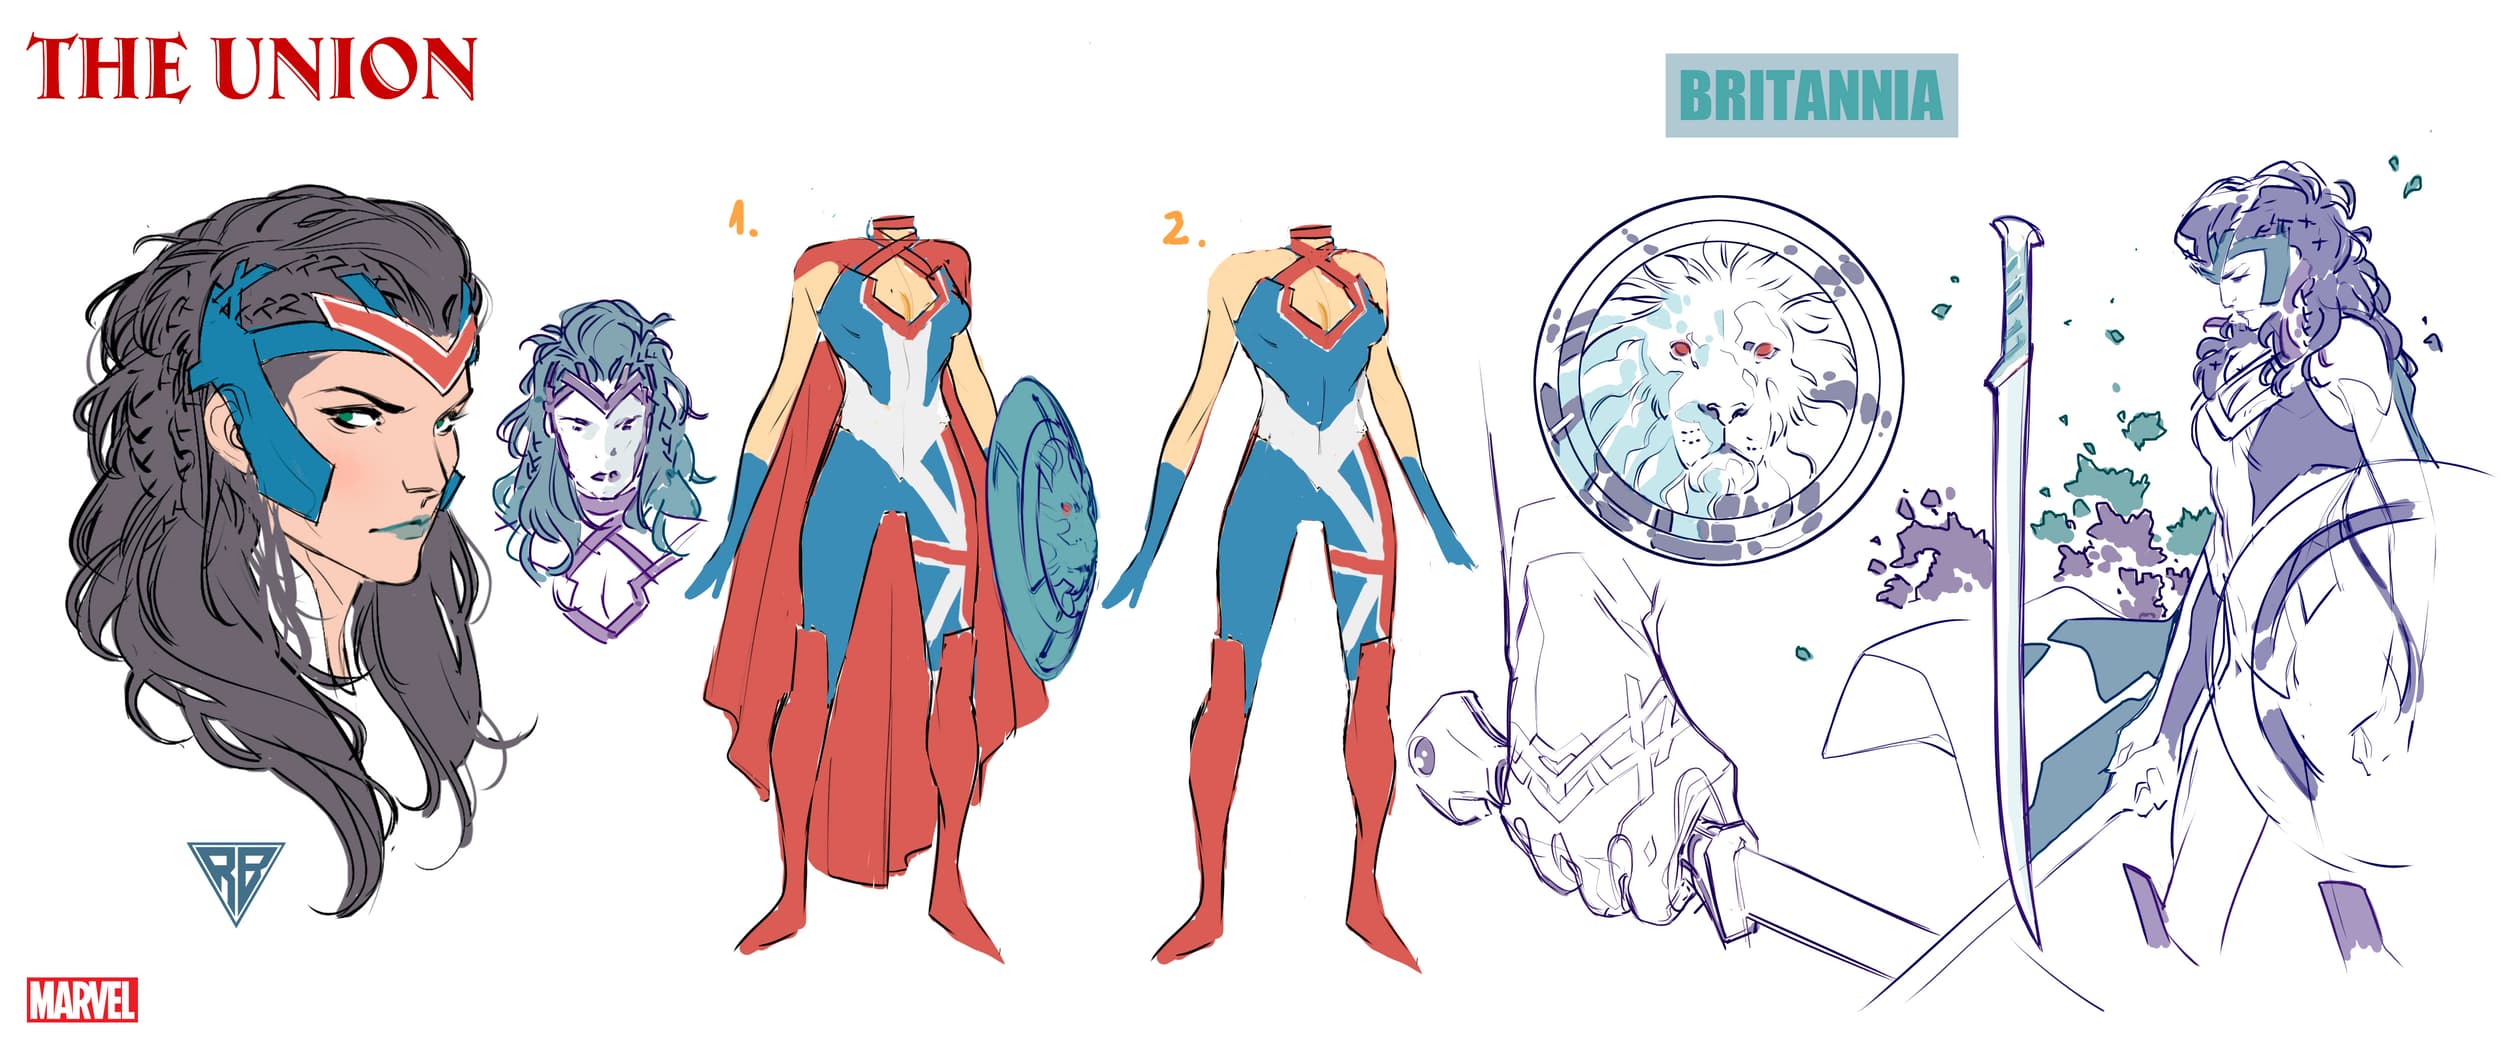 Britannia character design by R.B. Silva